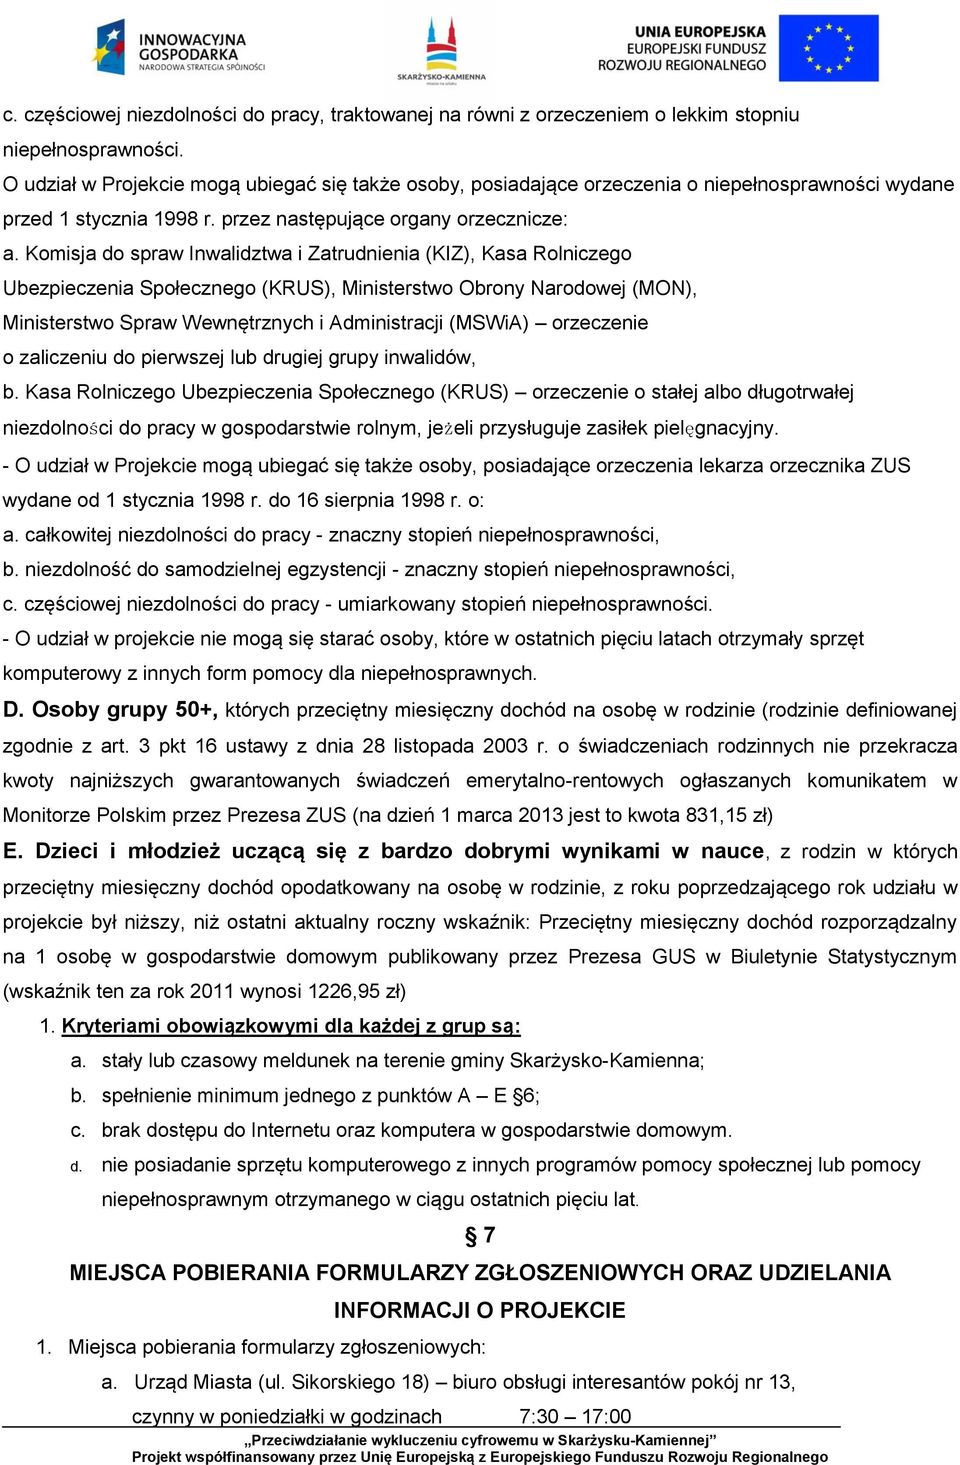 Komisja do spraw Inwalidztwa i Zatrudnienia (KIZ), Kasa Rolniczego Ubezpieczenia Społecznego (KRUS), Ministerstwo Obrony Narodowej (MON), Ministerstwo Spraw Wewnętrznych i Administracji (MSWiA)